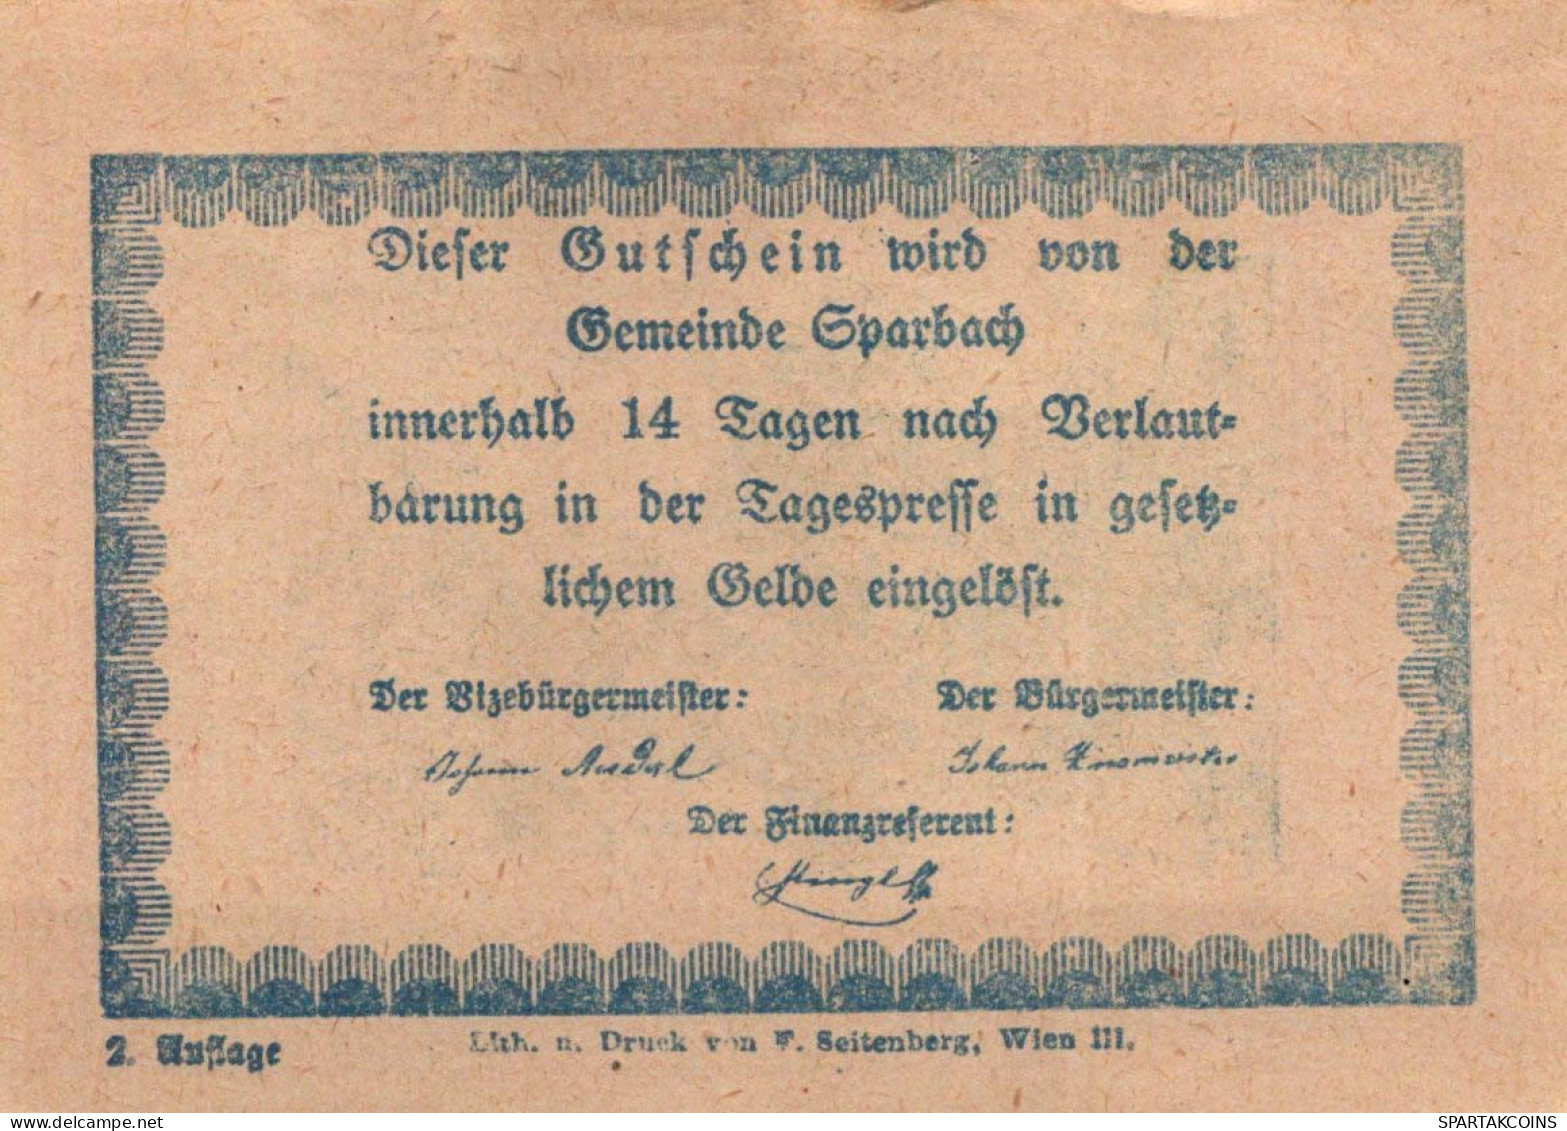 80 HELLER Stadt Sparbach Niedrigeren Österreich Notgeld Papiergeld Banknote #PG996 - [11] Local Banknote Issues